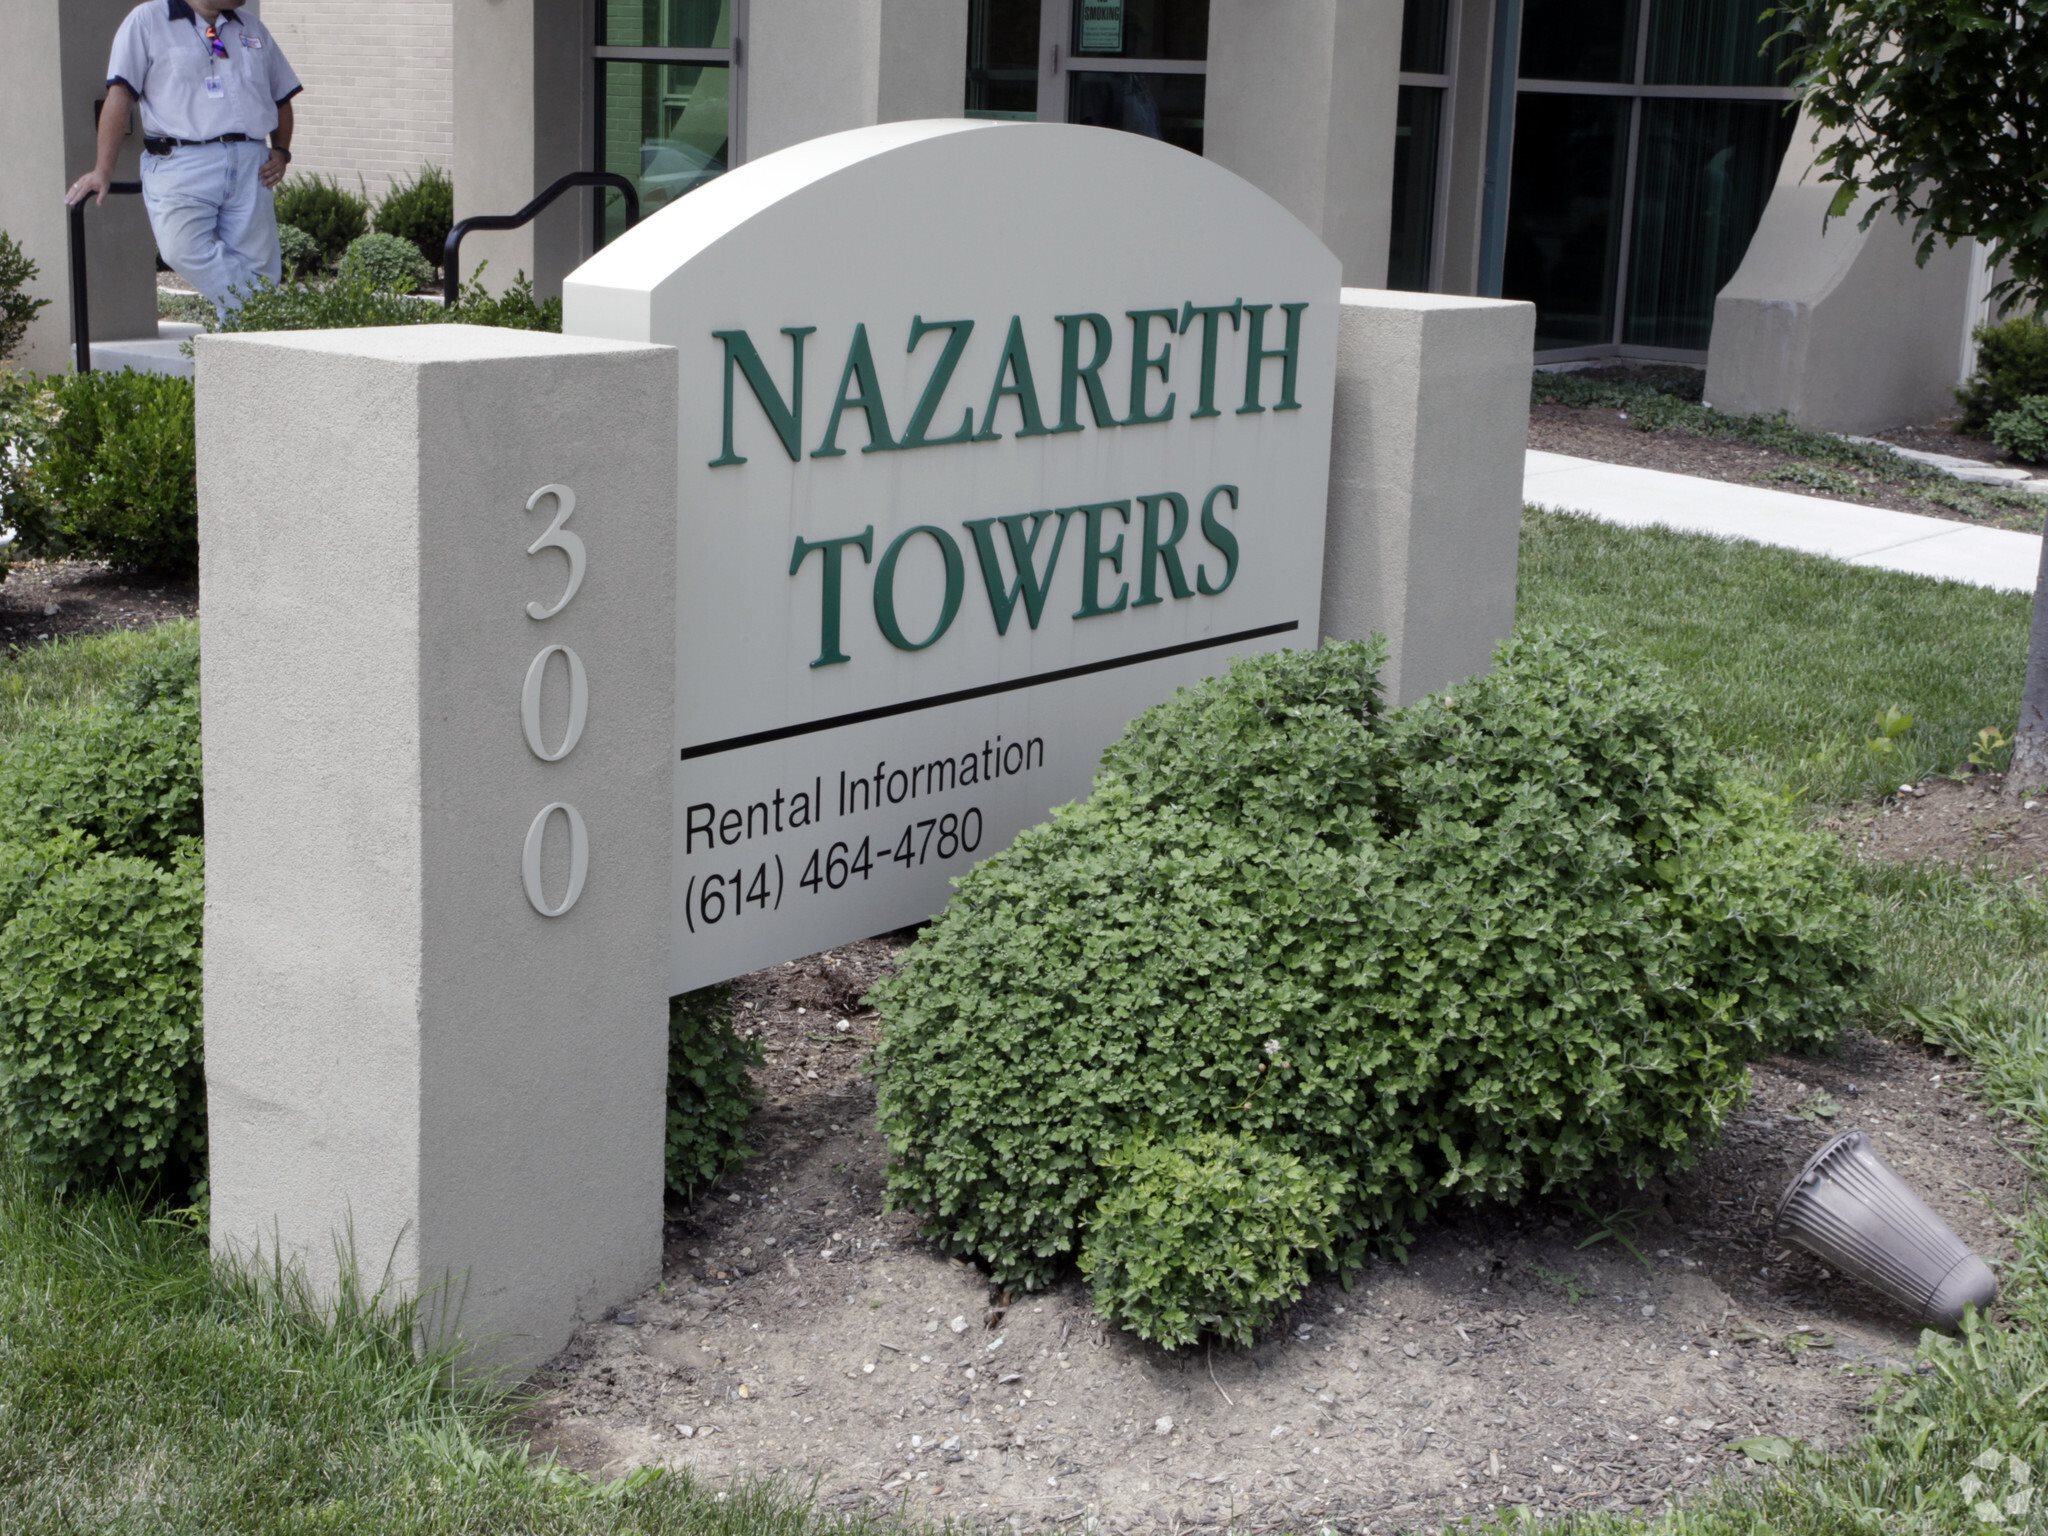 NAZARETH TOWERS